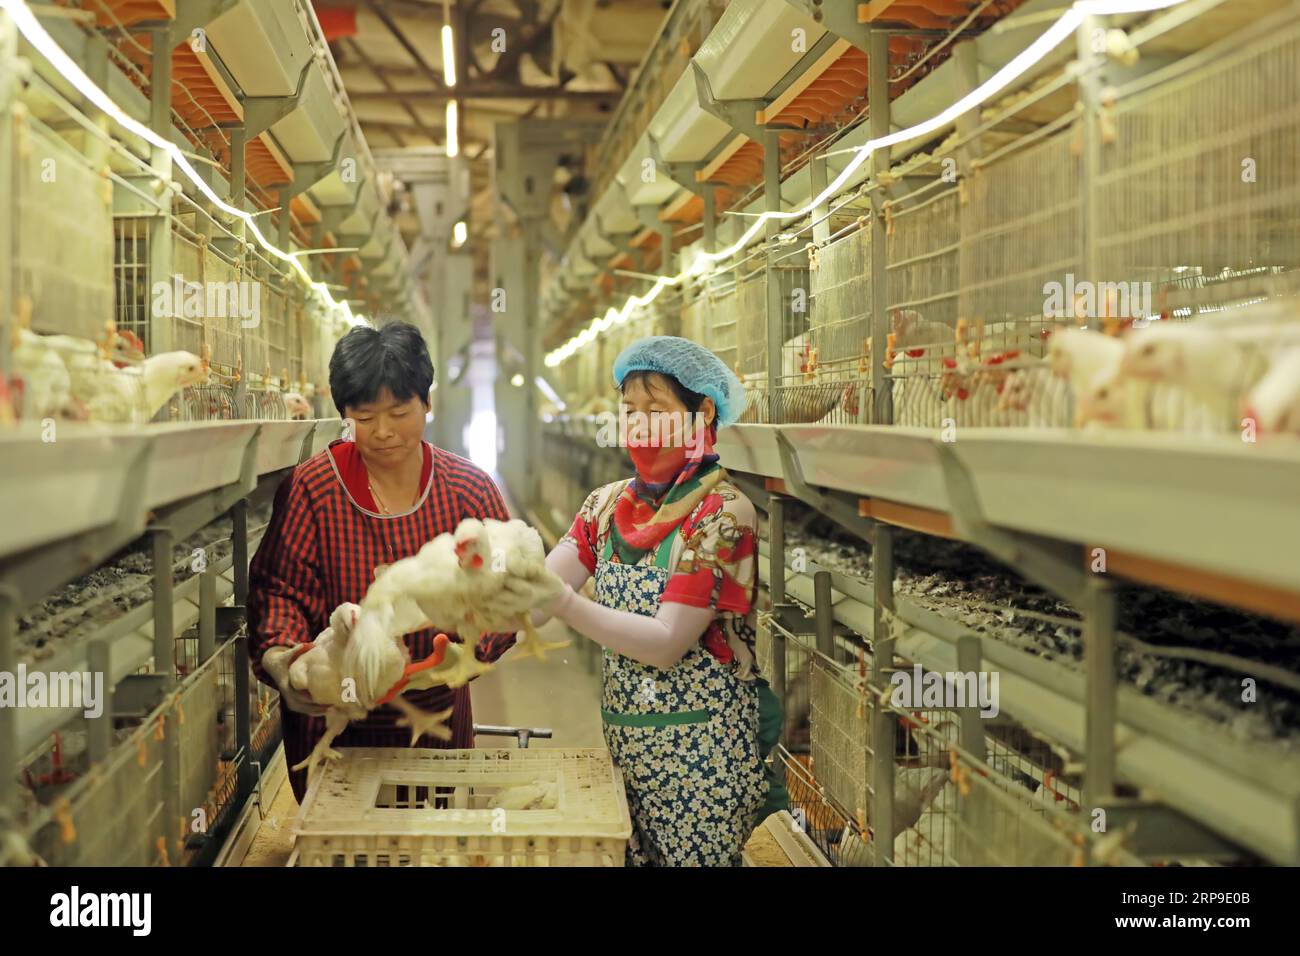 Contea di Luannan, Cina - 18 giugno 2019: Allevatori femminili guardano la crescita dei polli da carne, contea di Luannan, provincia di Hebei, Cina Foto Stock